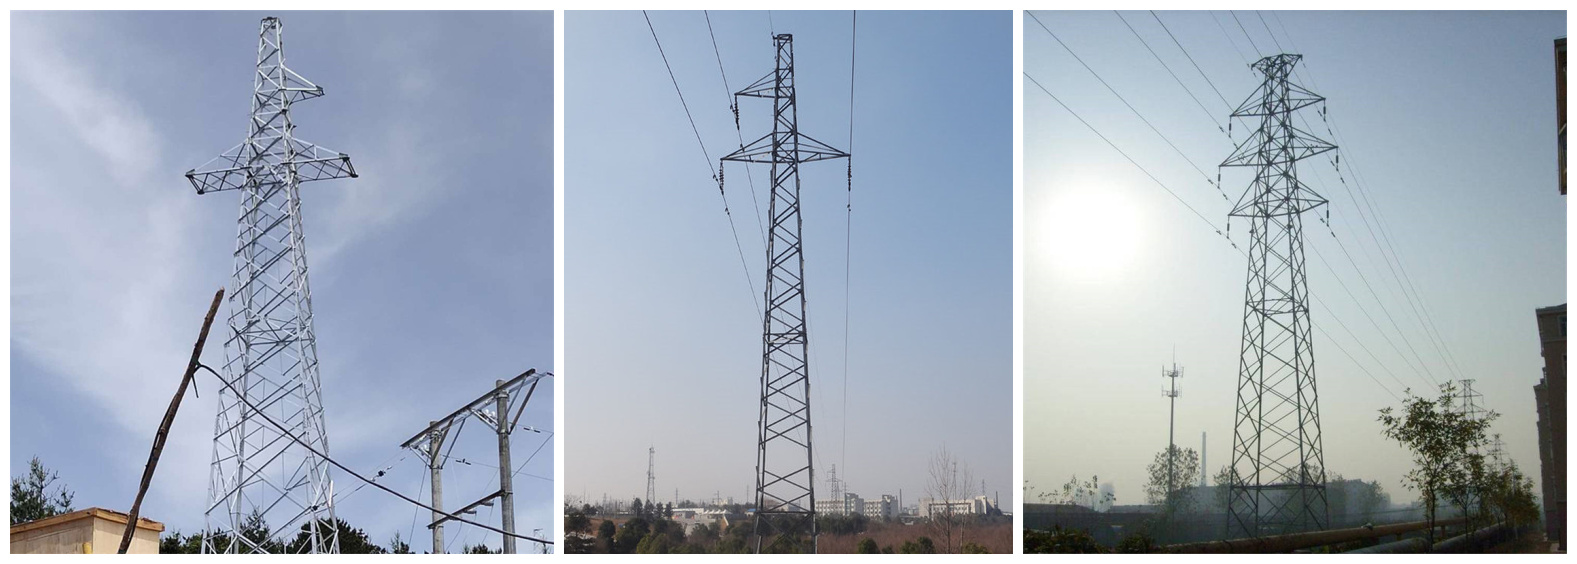 33kv electric transmission line steel tower